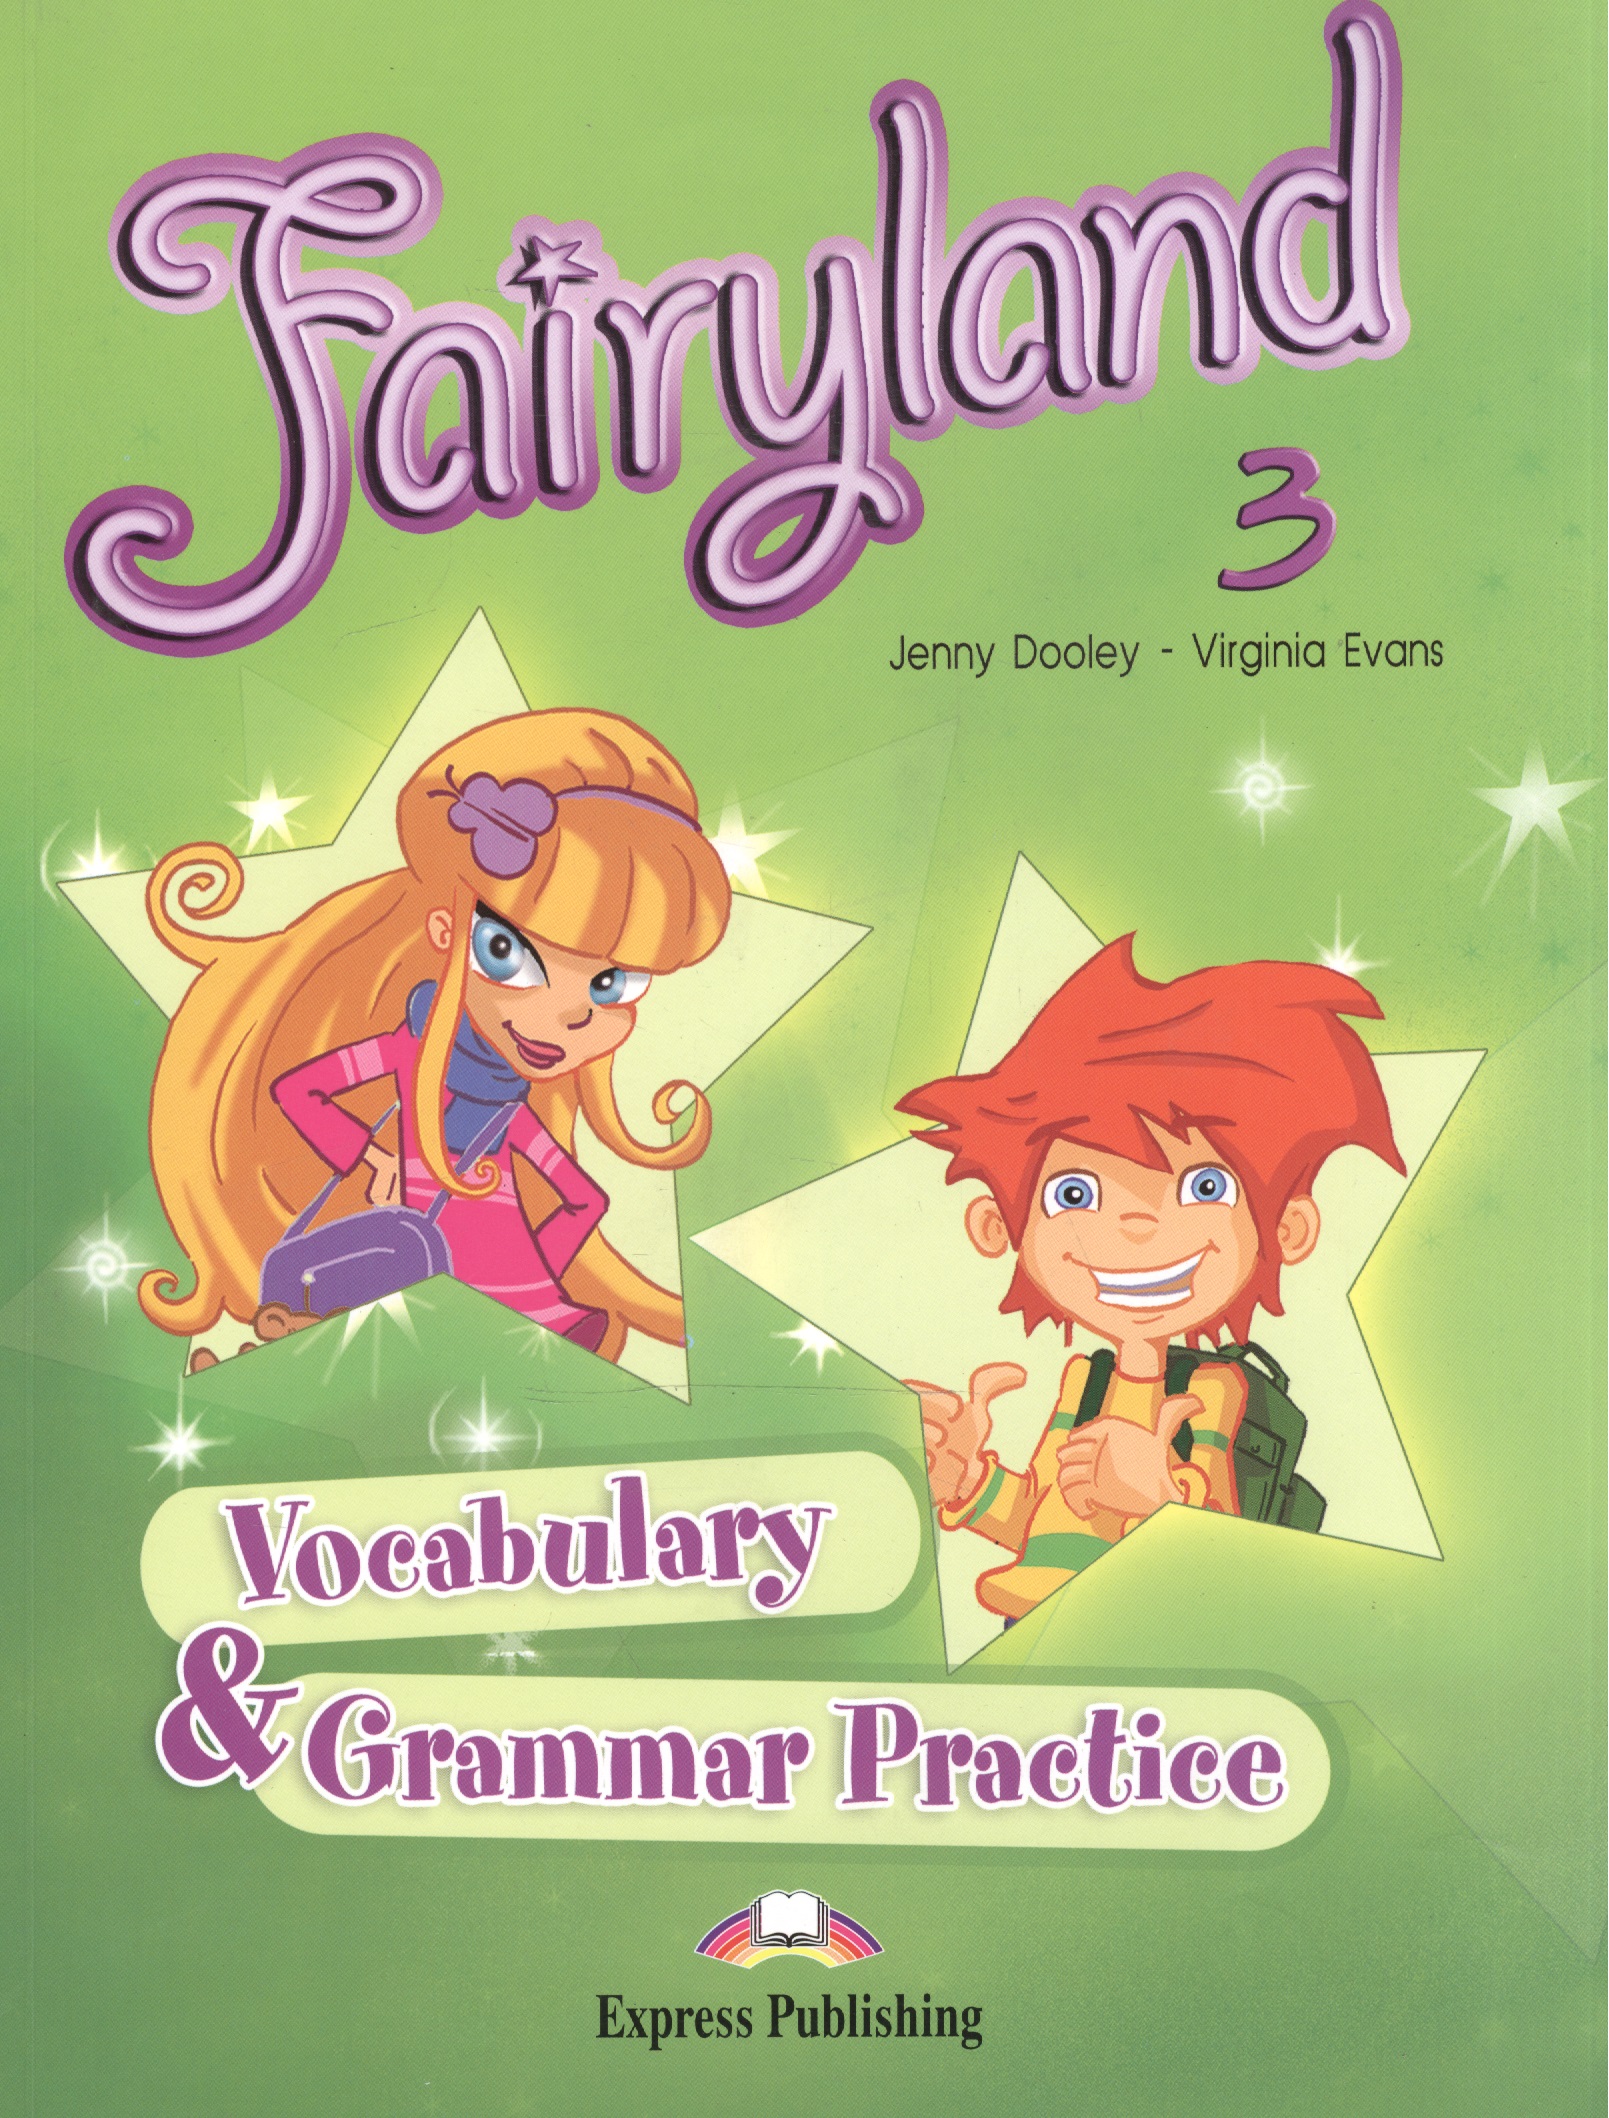 Эванс Вирджиния Fairyland 3. Vocabulary & Grammar Practice. Beginner. Сборник лексических и граммат. упражнений.